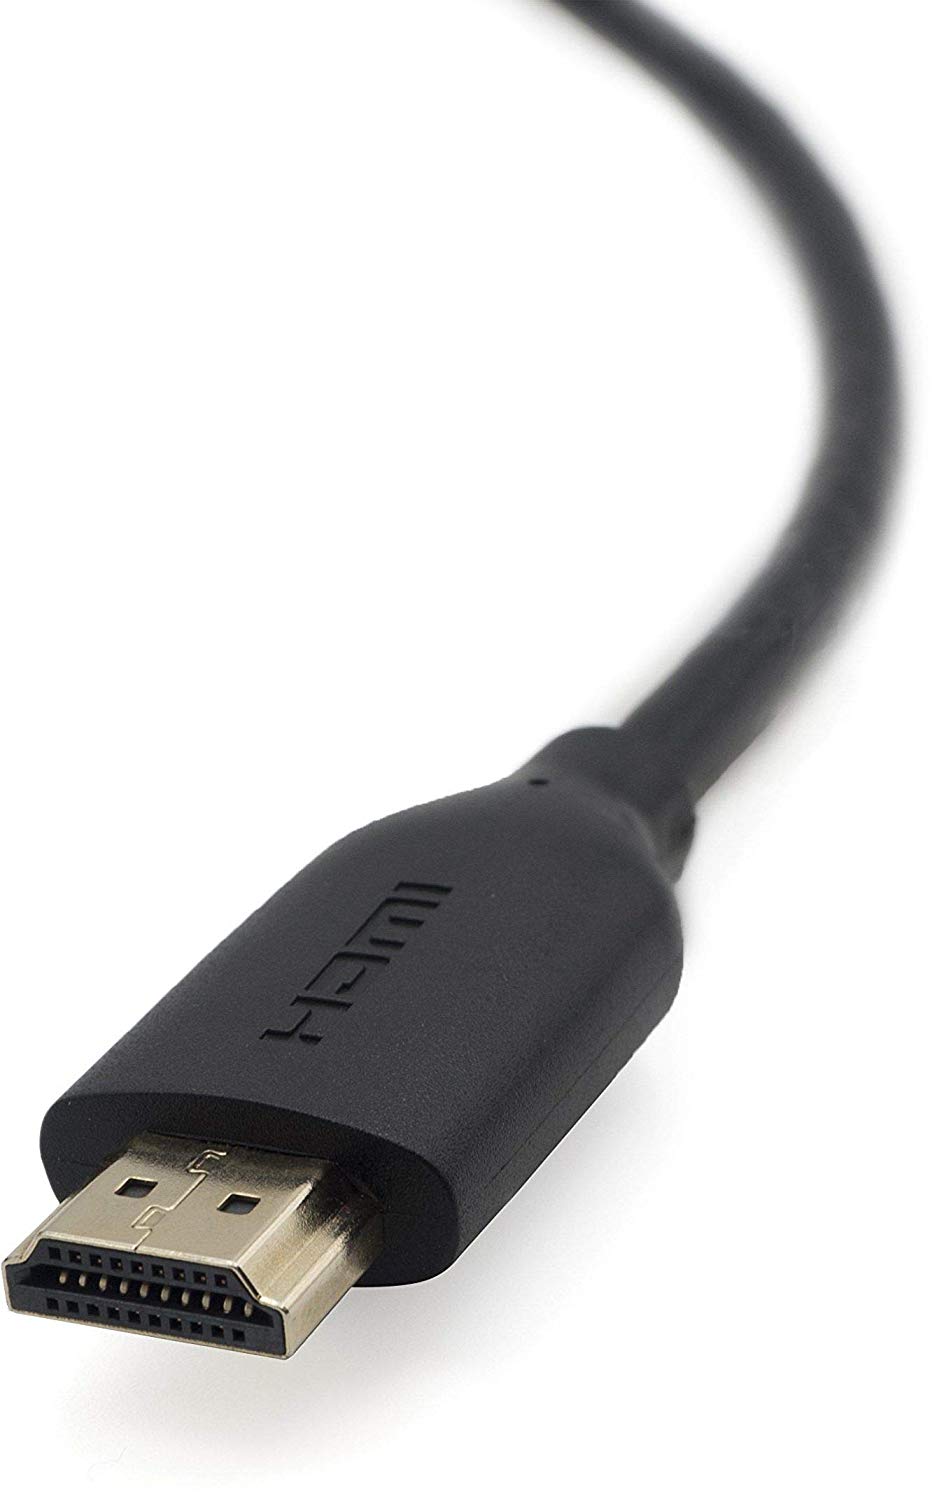 Cáp HDMI Belkin F3Y021bt10M (Đen)_4